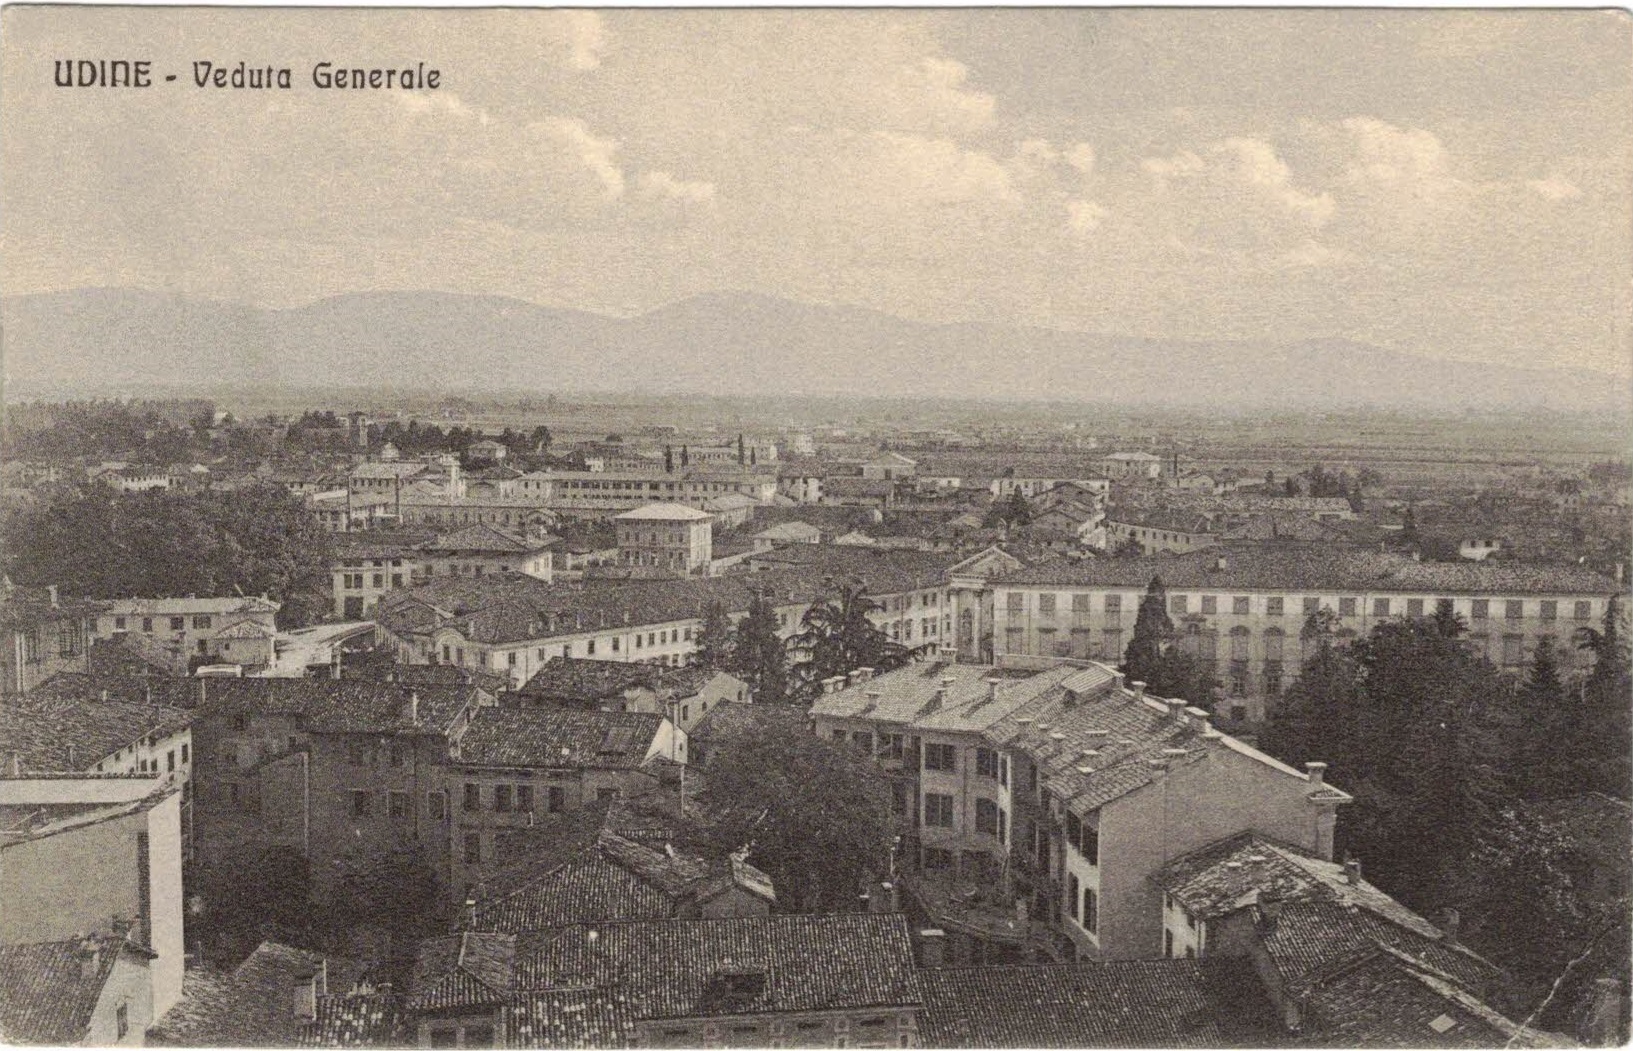 Udine - Venduta Generale (ITA)